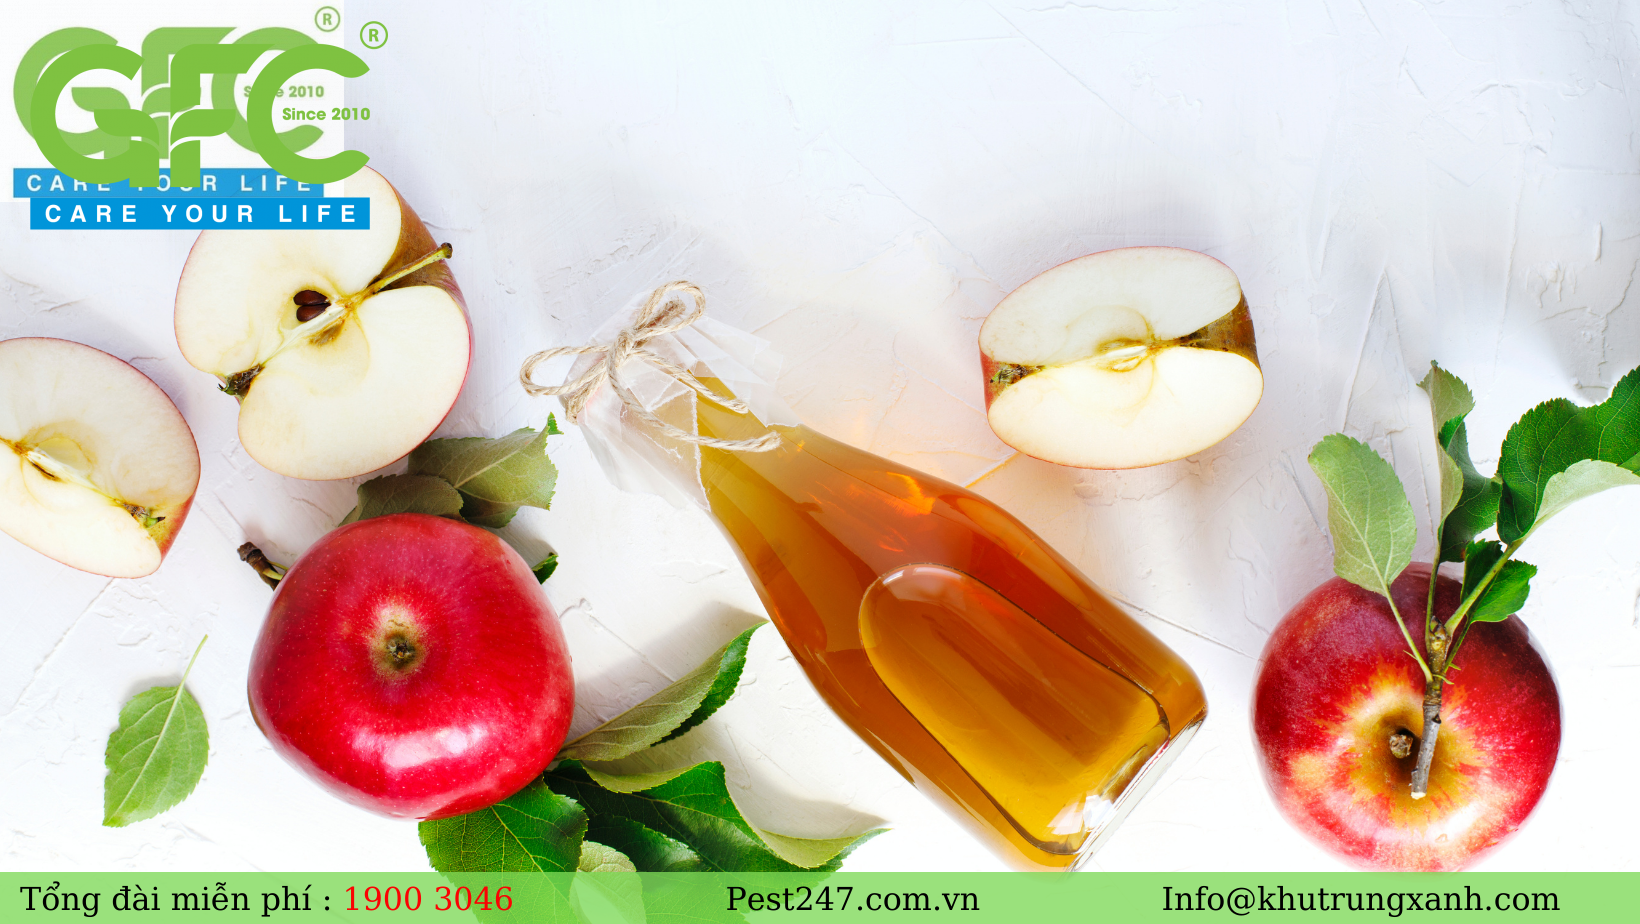 Giấm táo là loại nguyên liệu dễ tìm và là loại nguyên liệu tự nhiên diệt ruồi hiệu quả nhất.